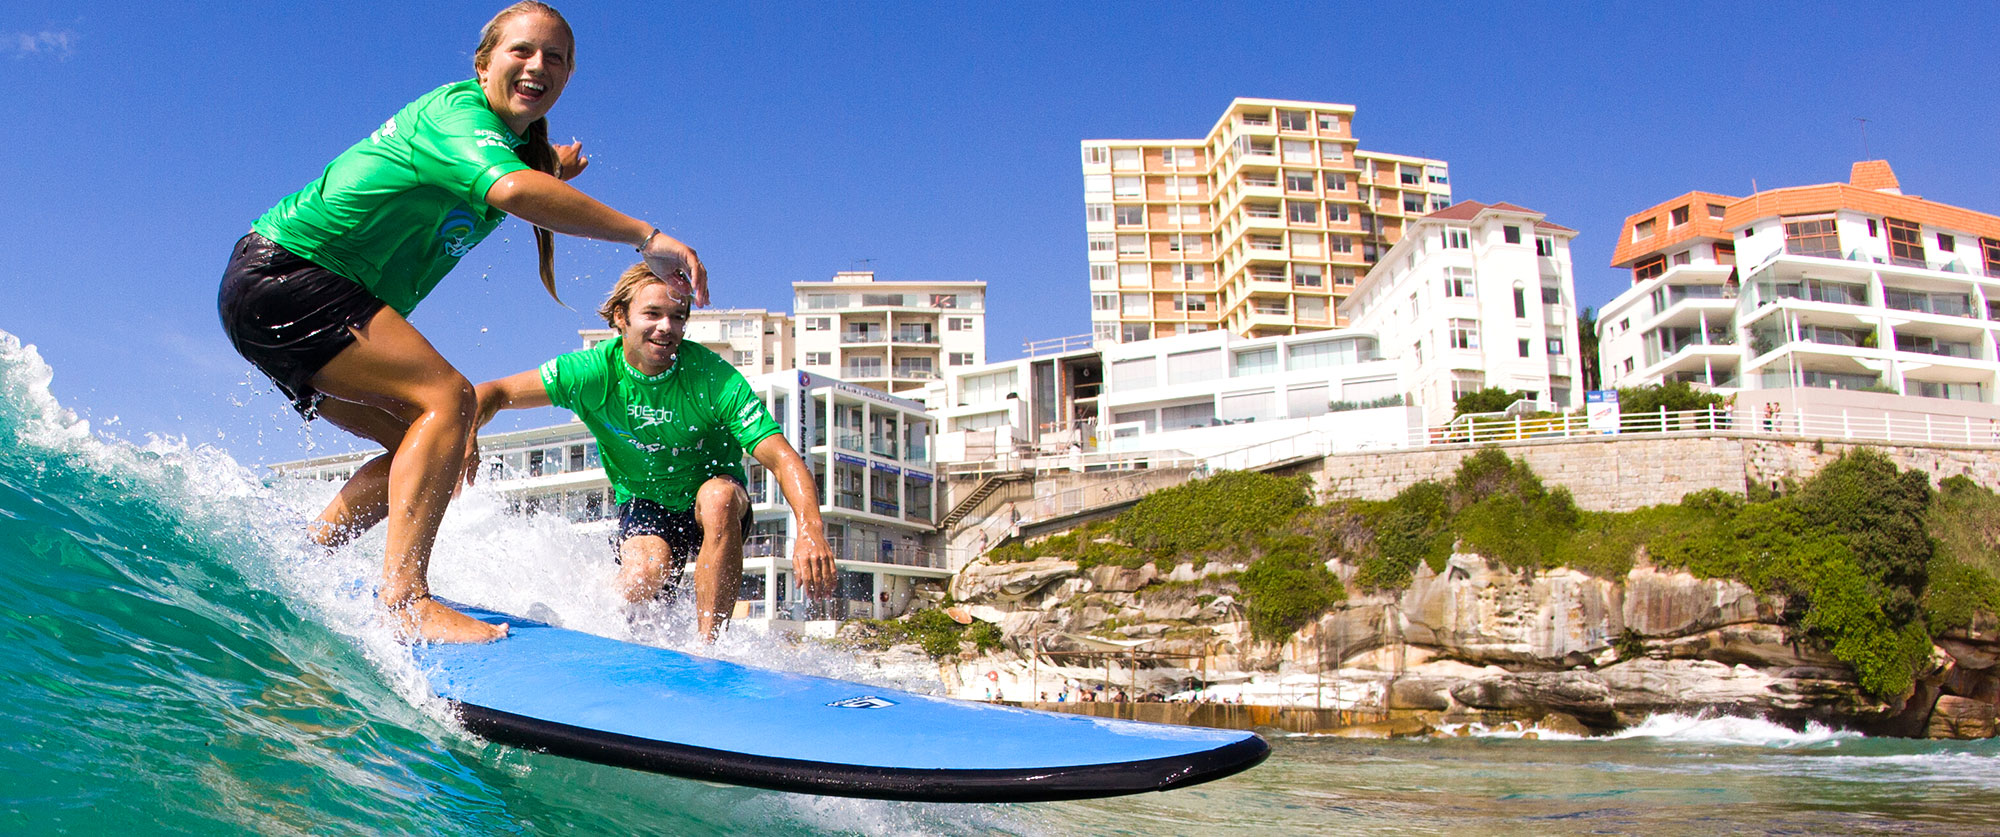 Let's Go Surfing - Bondi Beach, Sydney Australia